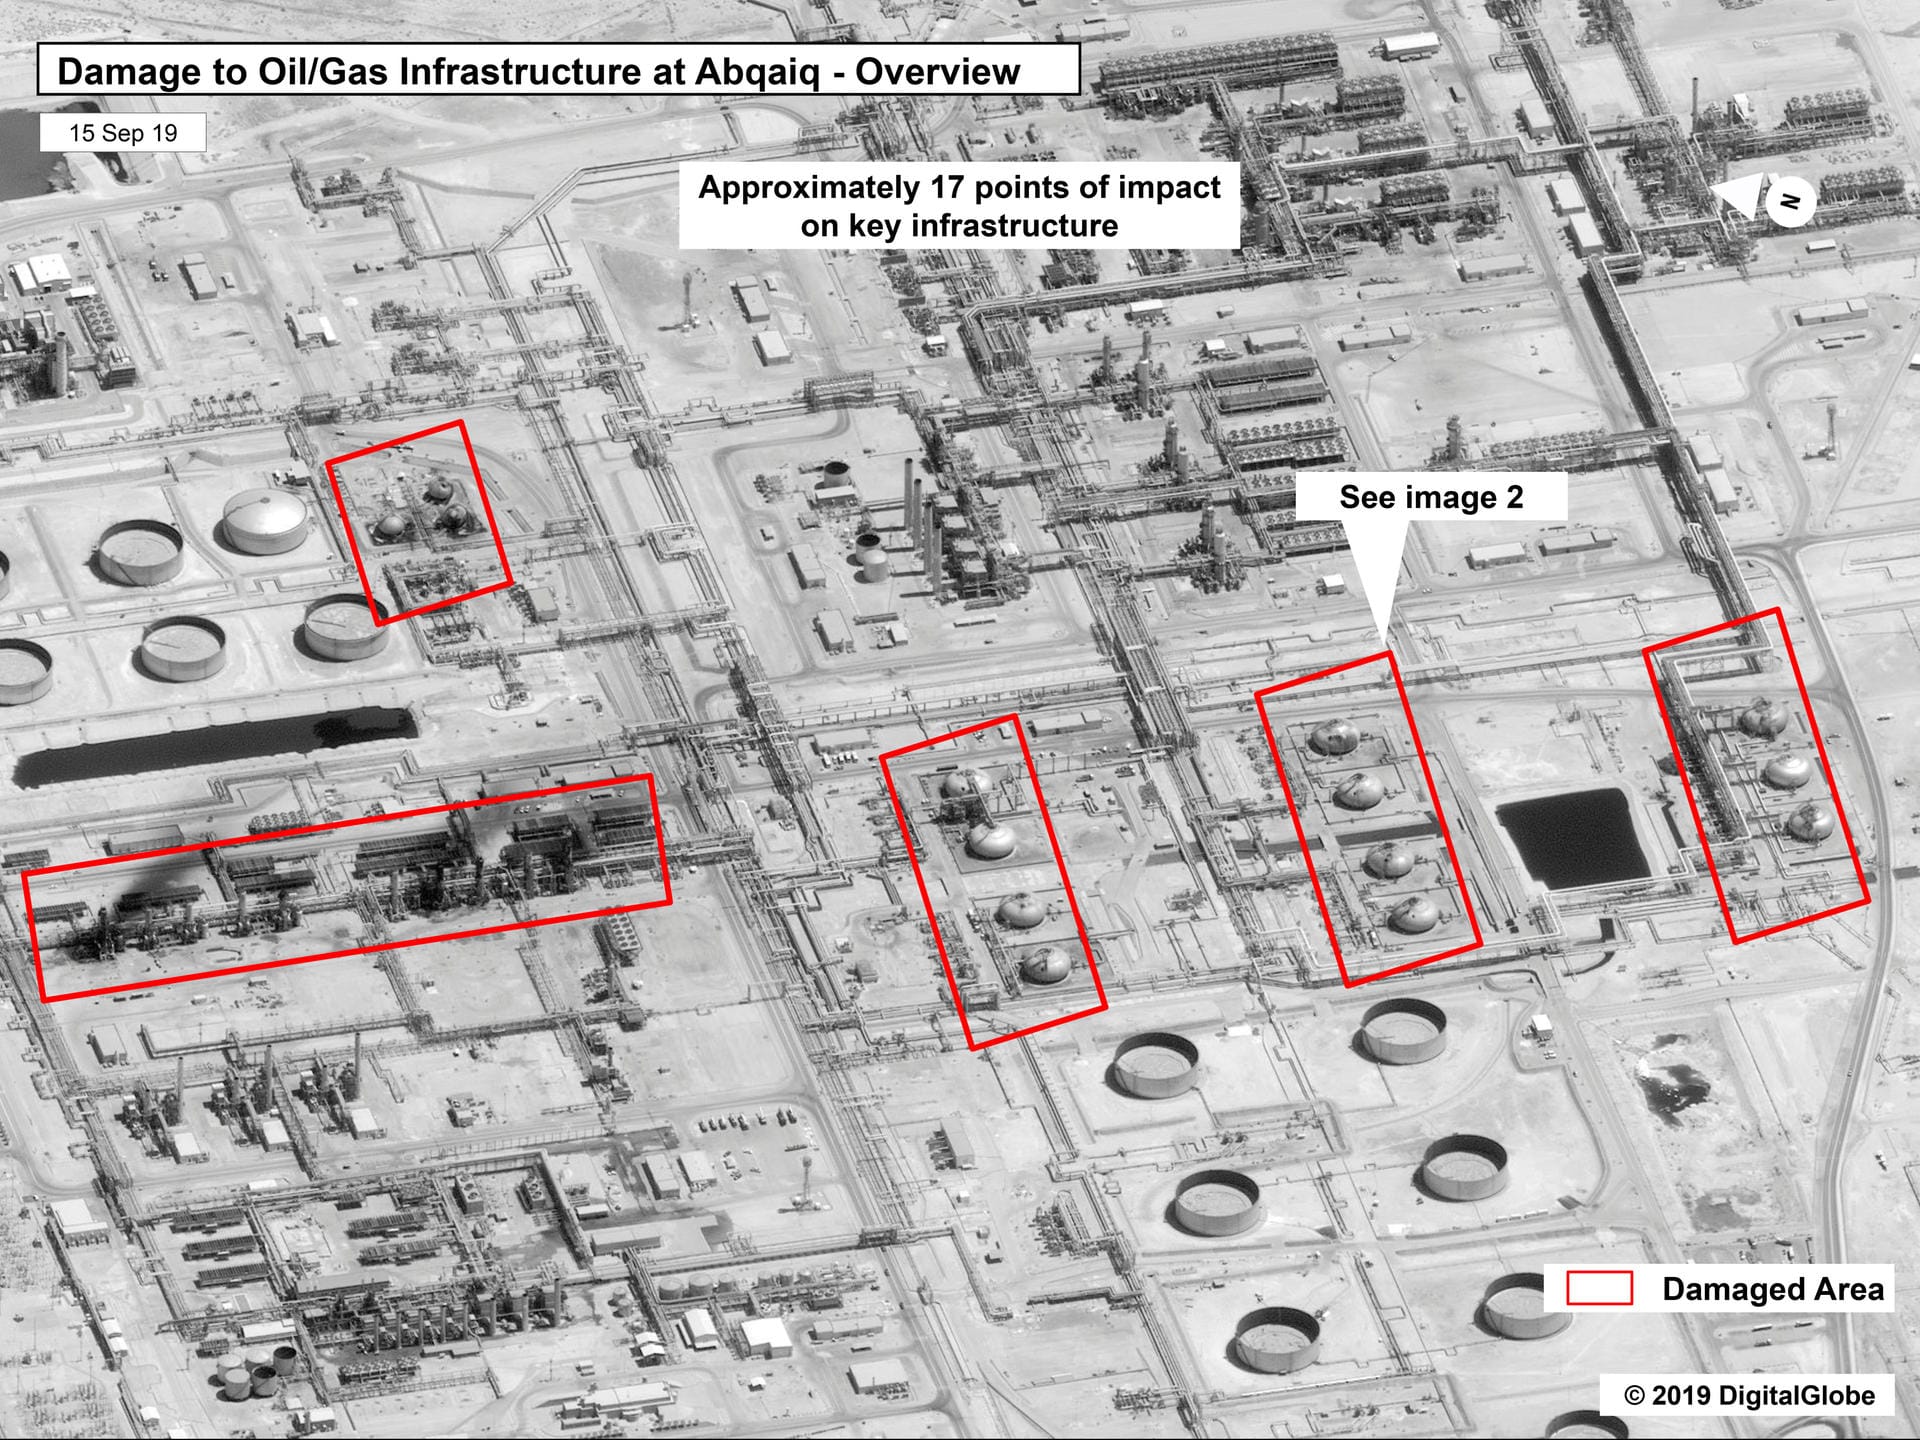 Auf diesem Bild ist markiert, wo die Anlage von den Drohnen getroffen wurde: Bei den markierten Zonen handelt es sich um die beschädigten Bereiche der Raffinerie.